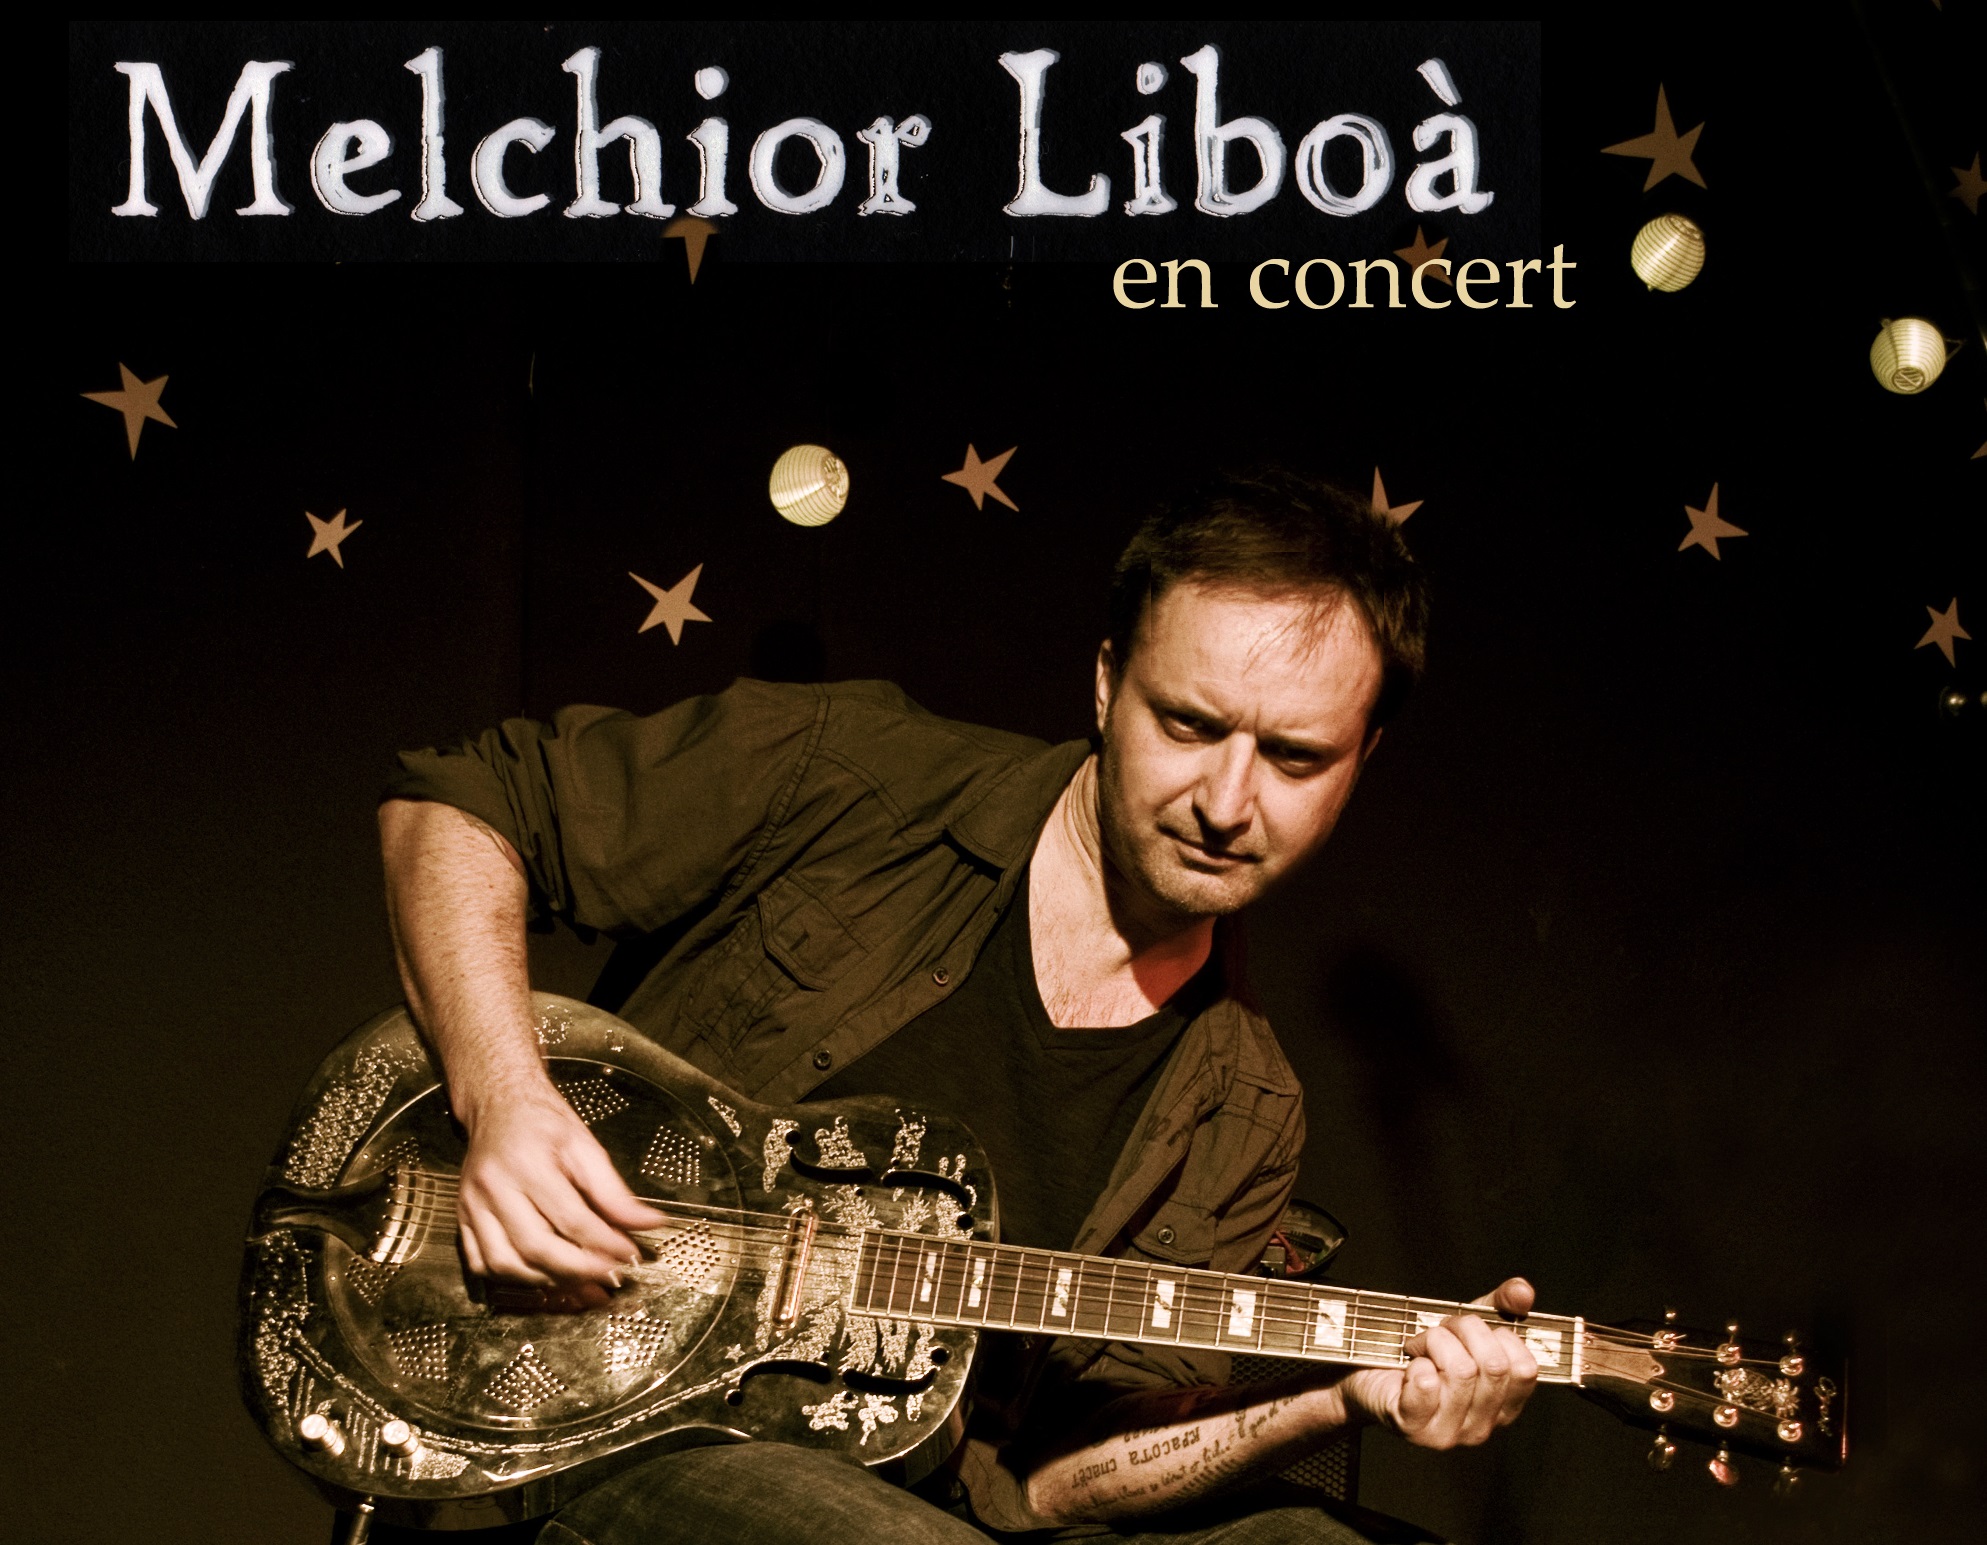 Concert : Melchior Liboà